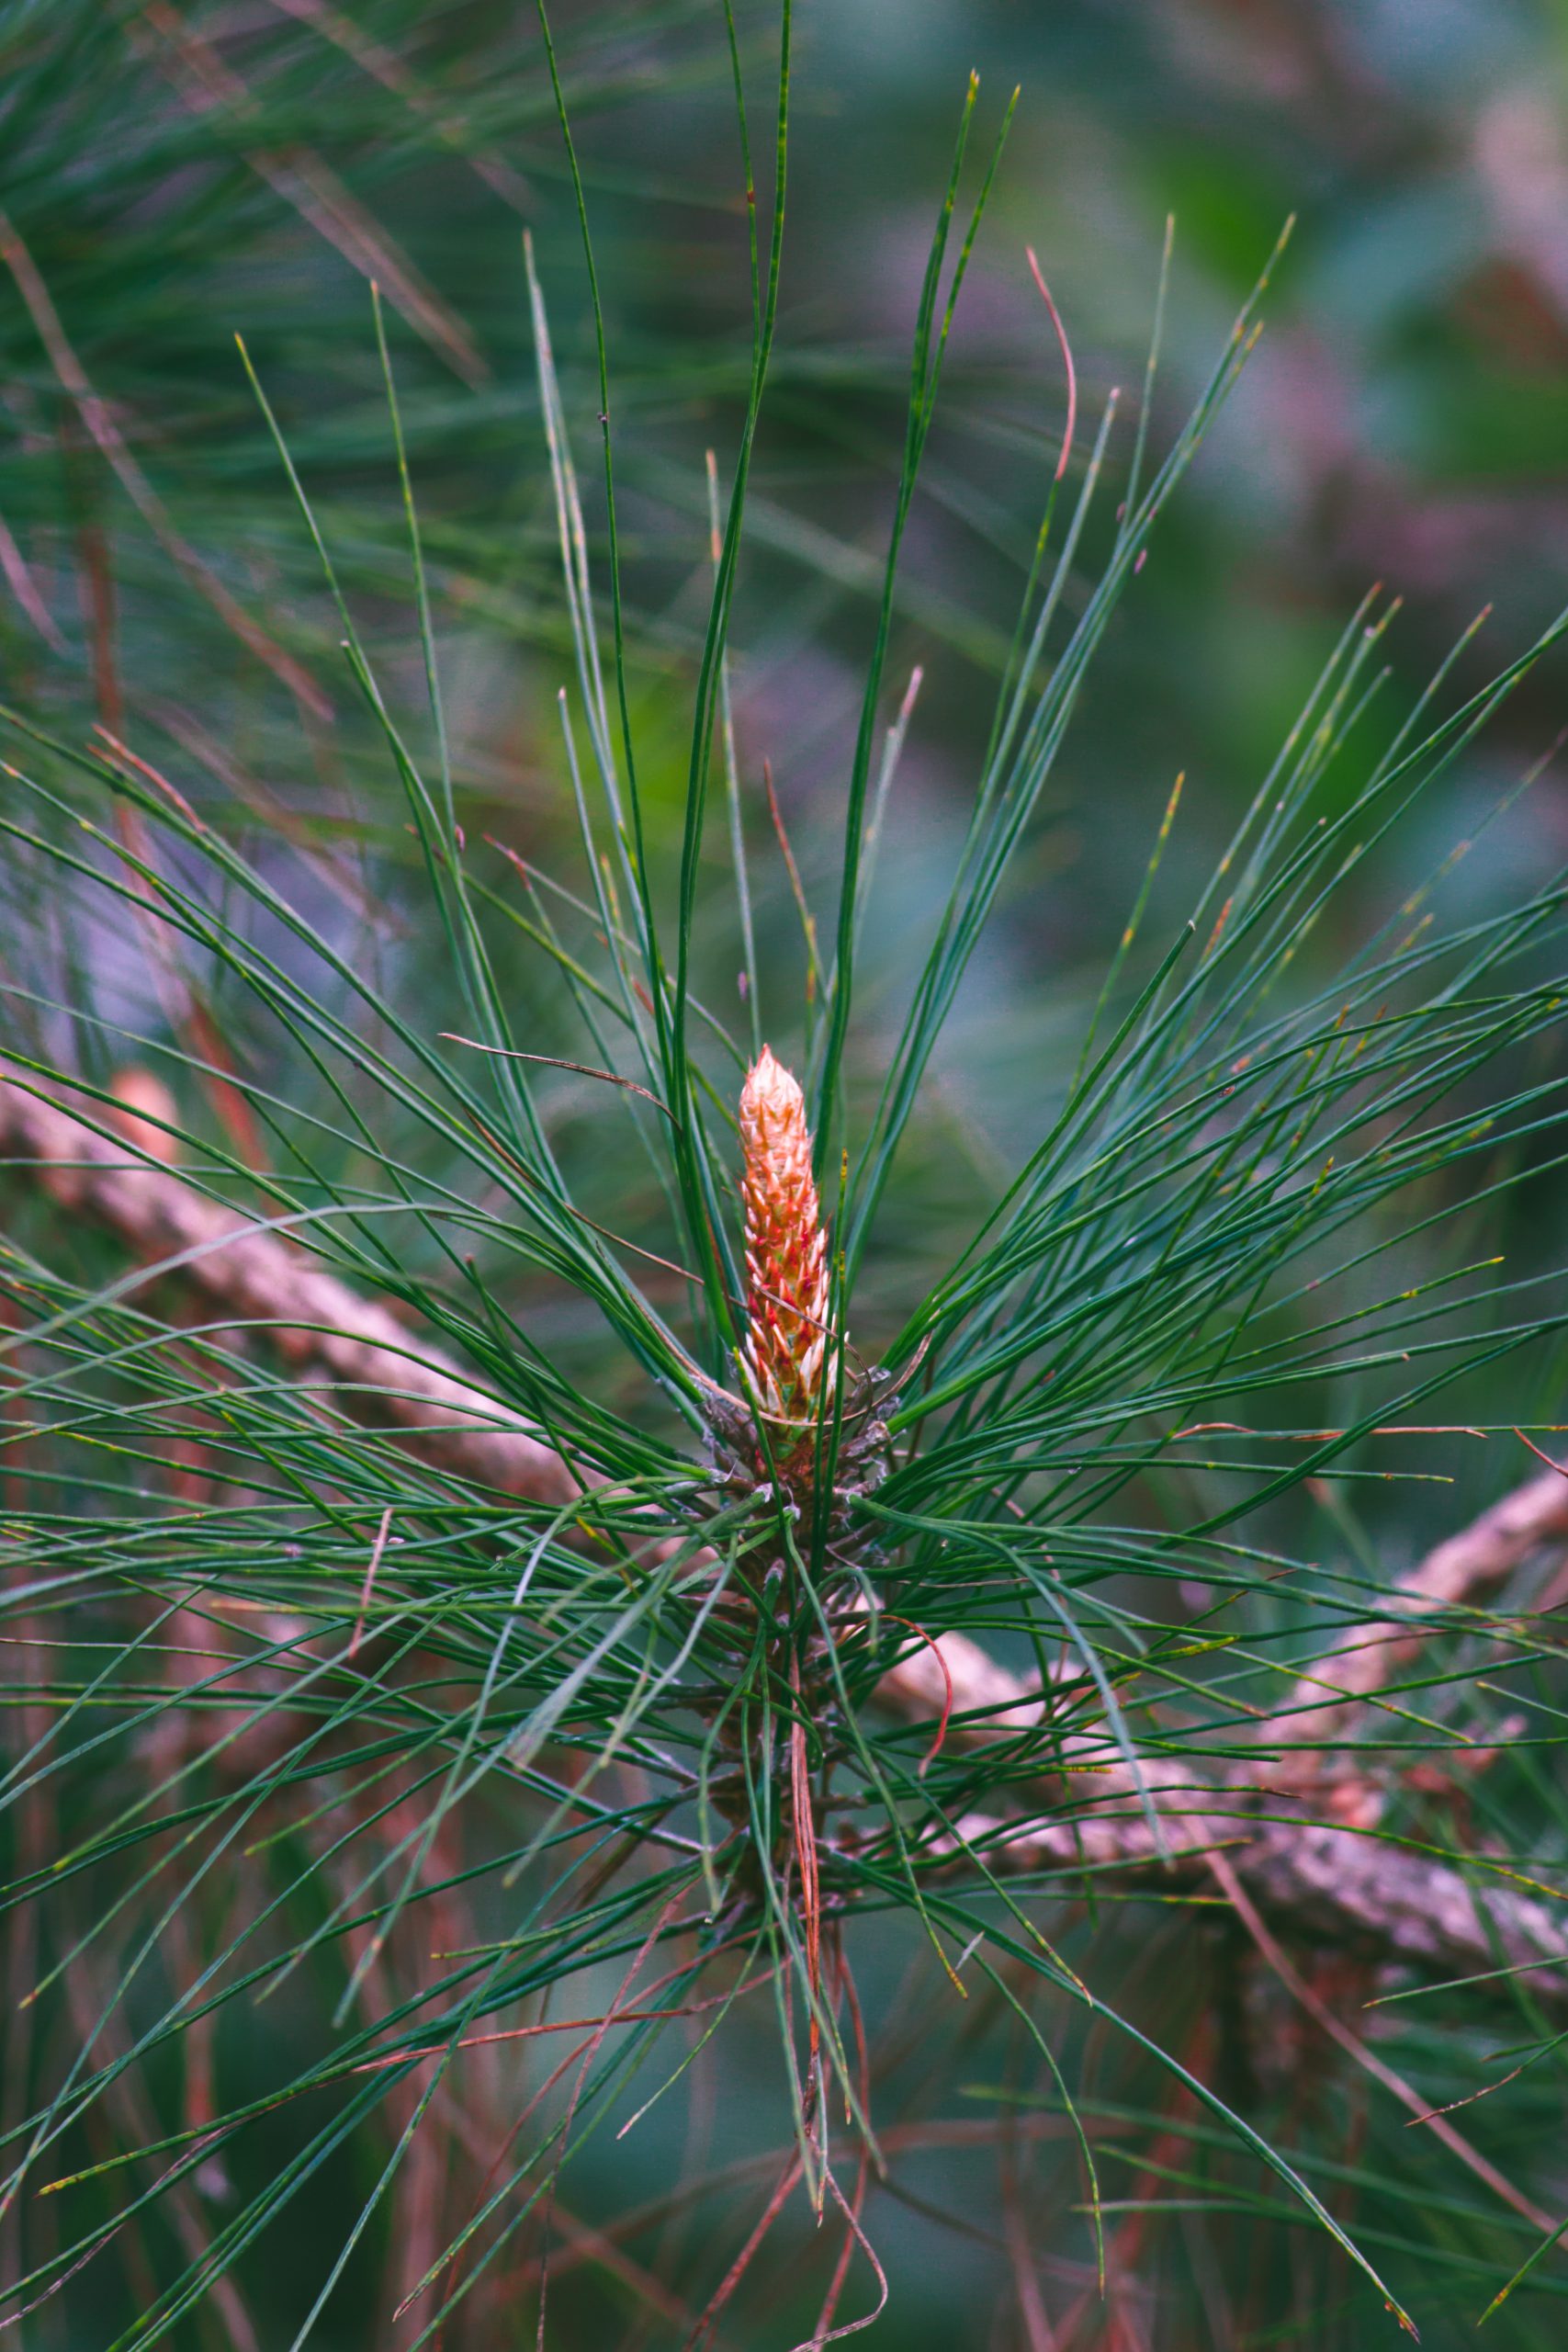 Leaves of pine tree